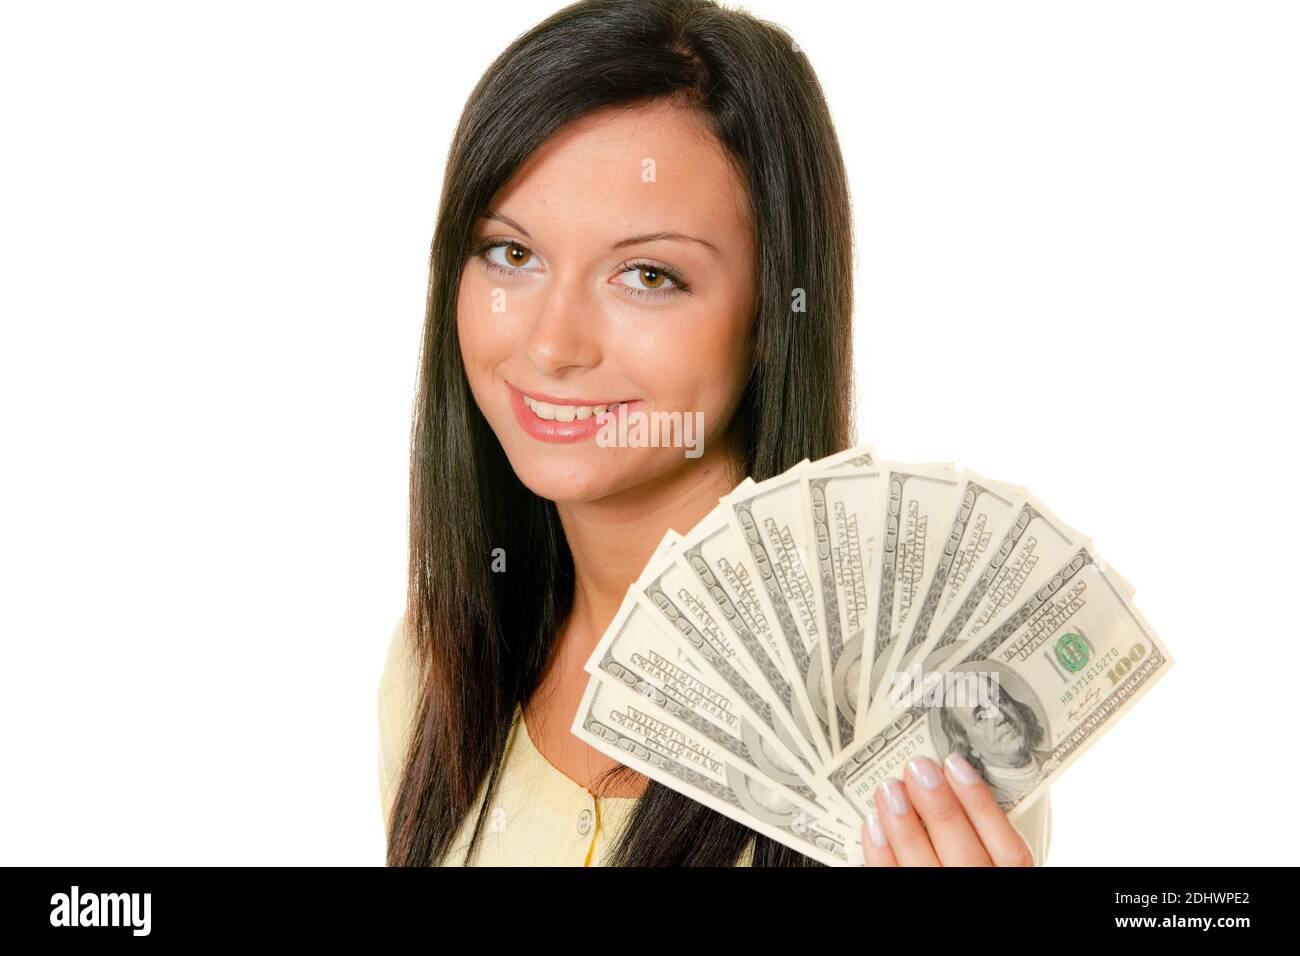 Junge Frau mit einem Bündel US-Dollars in der hand Foto Stock